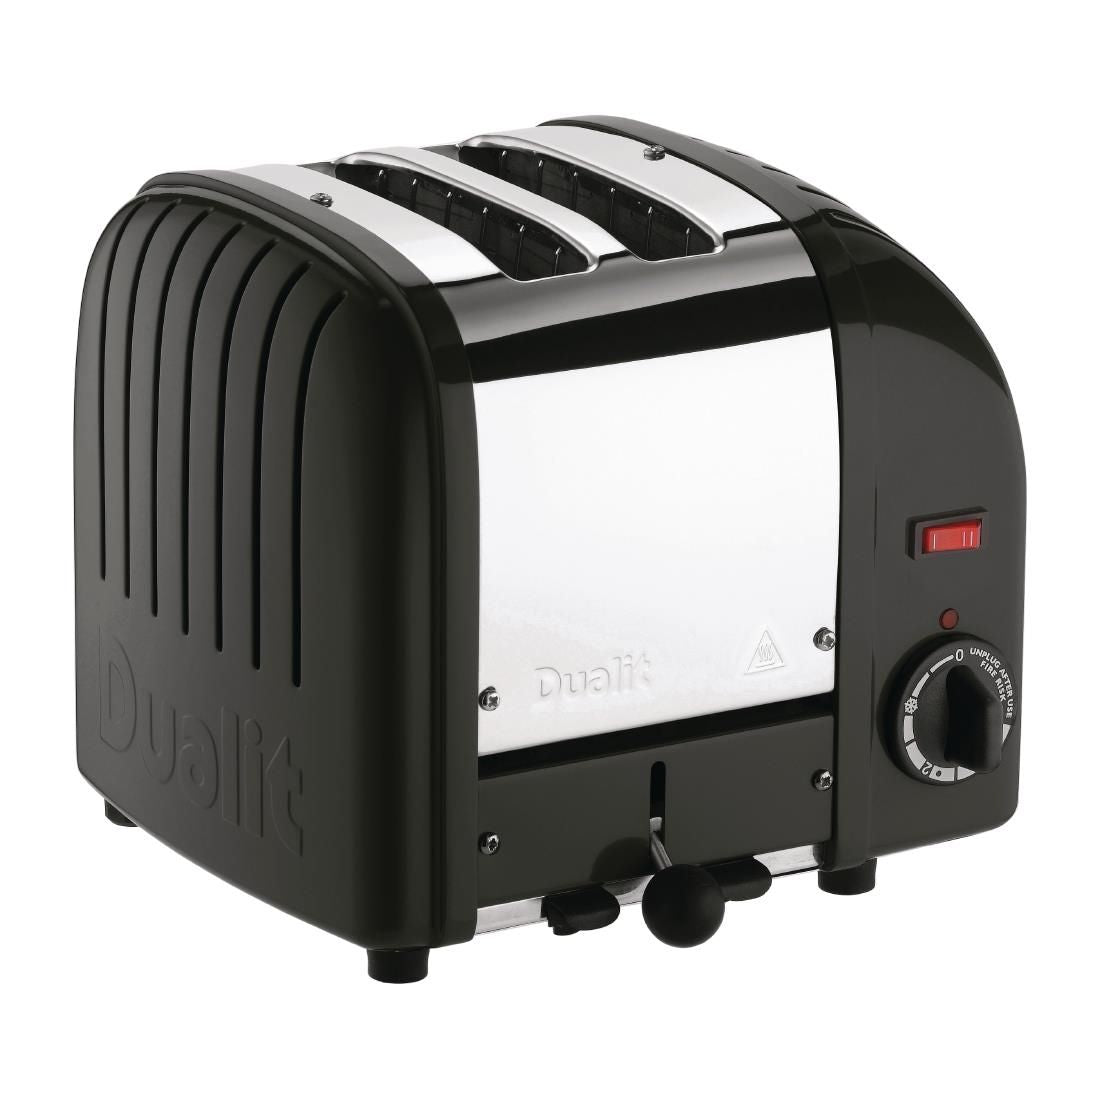 Dualit 2 Slice Vario Toaster Black 20237 - CB982 Toasters Dualit   